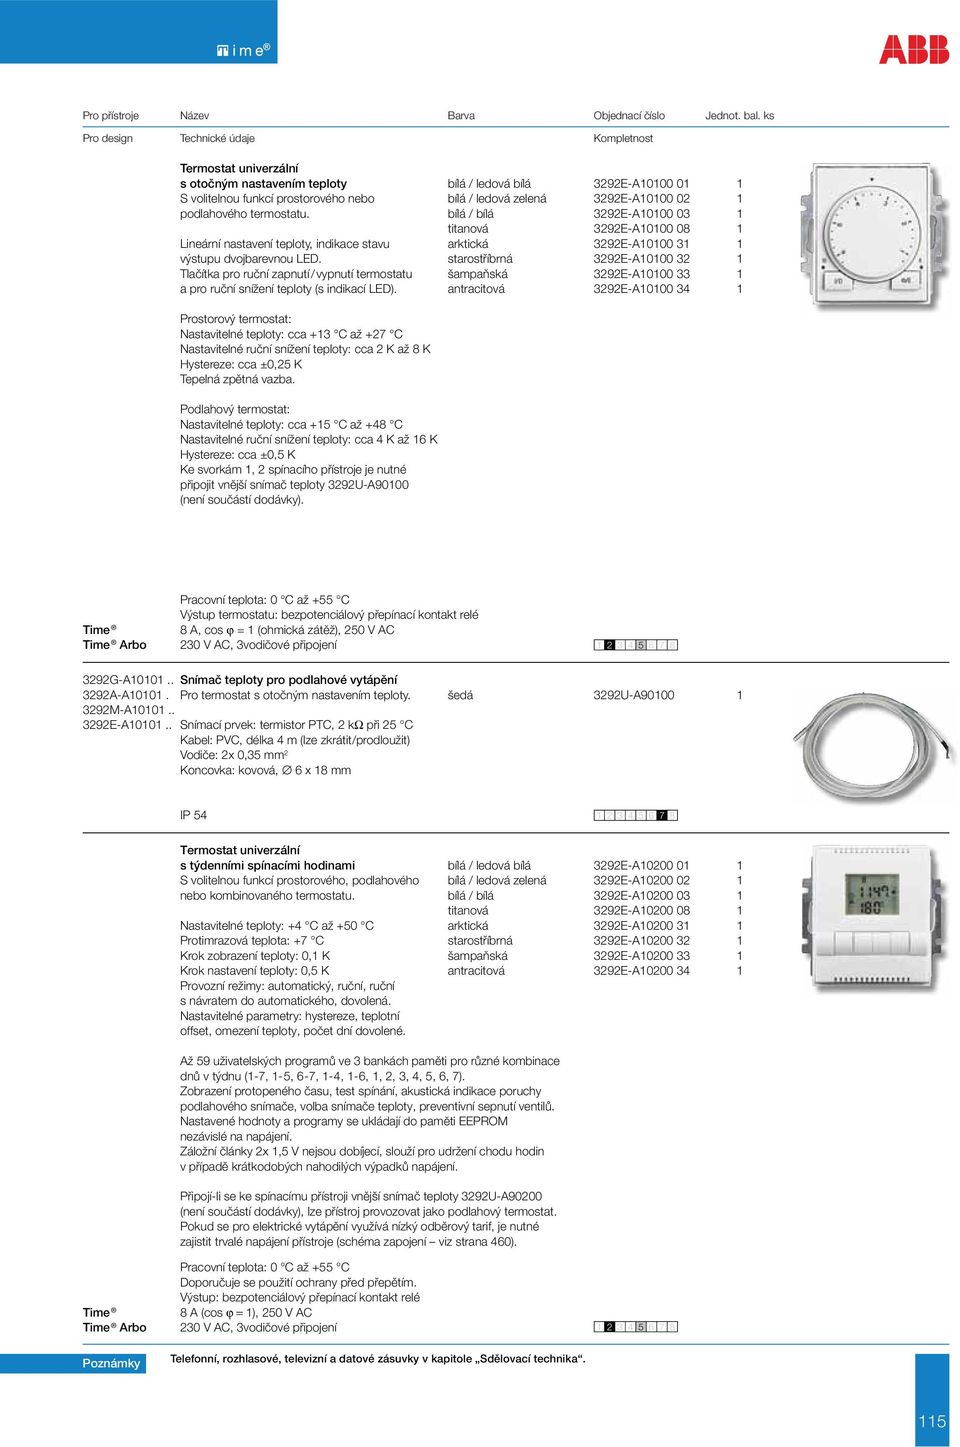 starostříbrná 3292E-A10100 32 1 Tlačítka pro ruční zapnutí / vypnutí termostatu šampaňská 3292E-A10100 33 1 a pro ruční snížení teploty (s indikací LED).